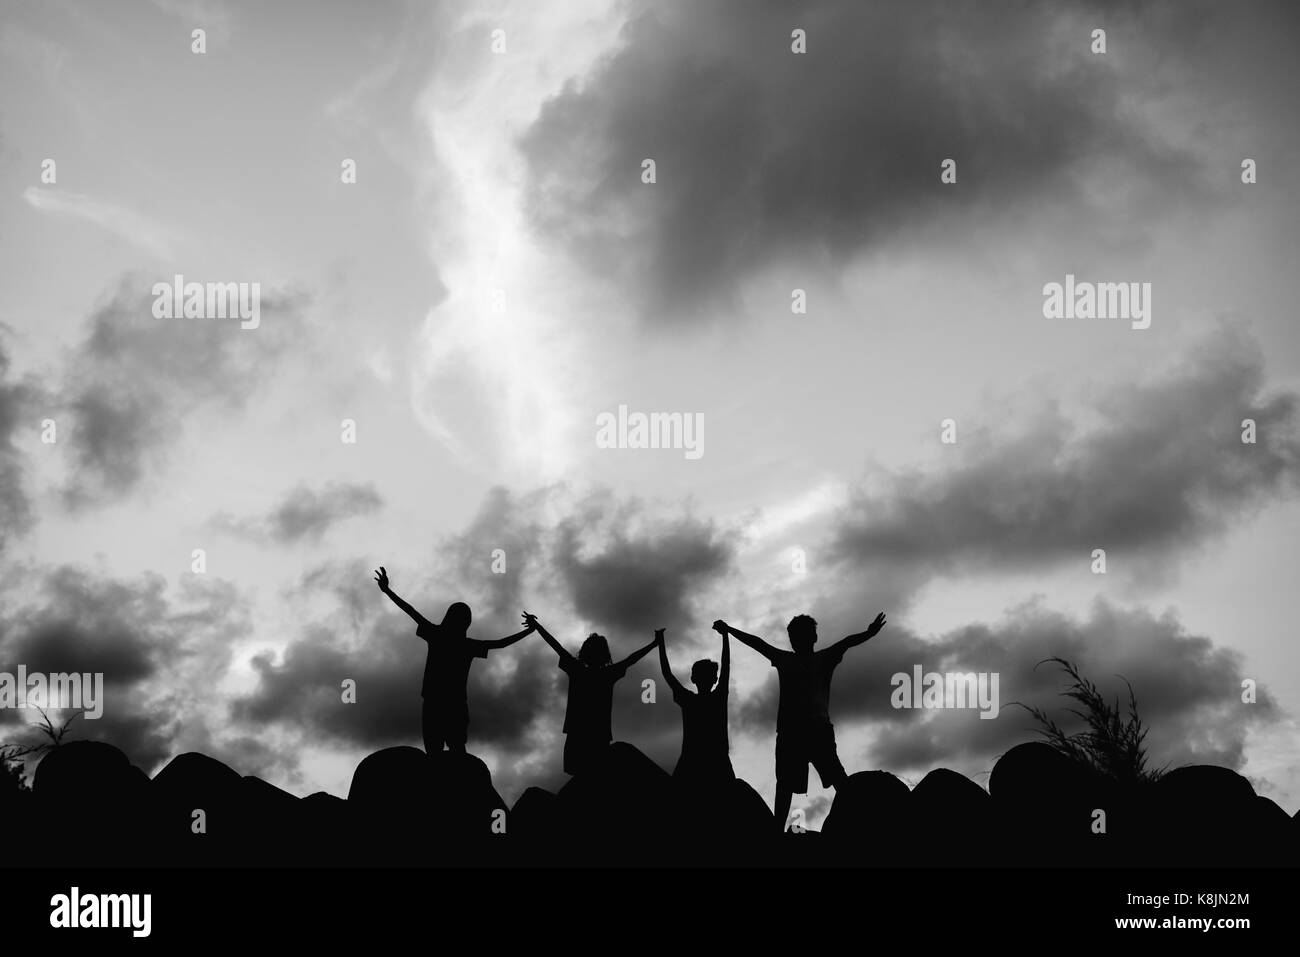 Silhouette foto di bambini in piedi su una pietra con ampio braccio aperto.contenti i bambini divertendosi insieme in silhouette.ombra di bambini in bianco e nero ph Foto Stock